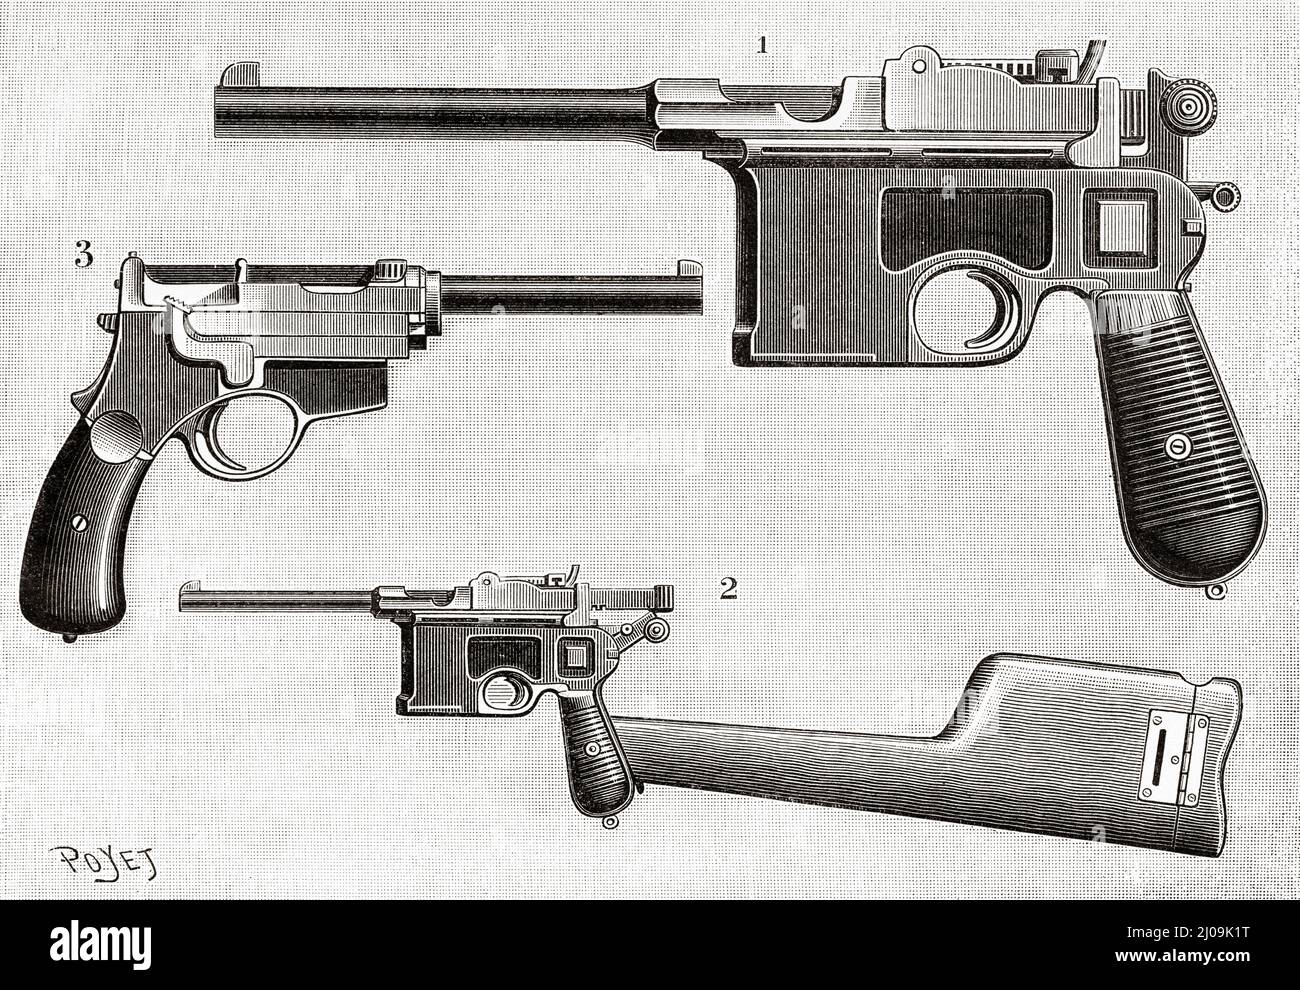 Automatische Pistolen. 1 Mauser-Pistole, 2 Mauser-Pistole, die mit der Schleuse in ein Gewehr verwandelt wurde, 3 Pistolet Mannlicher. Alte, gravierte Illustration aus dem 19.. Jahrhundert von La Nature 1899 Stockfoto